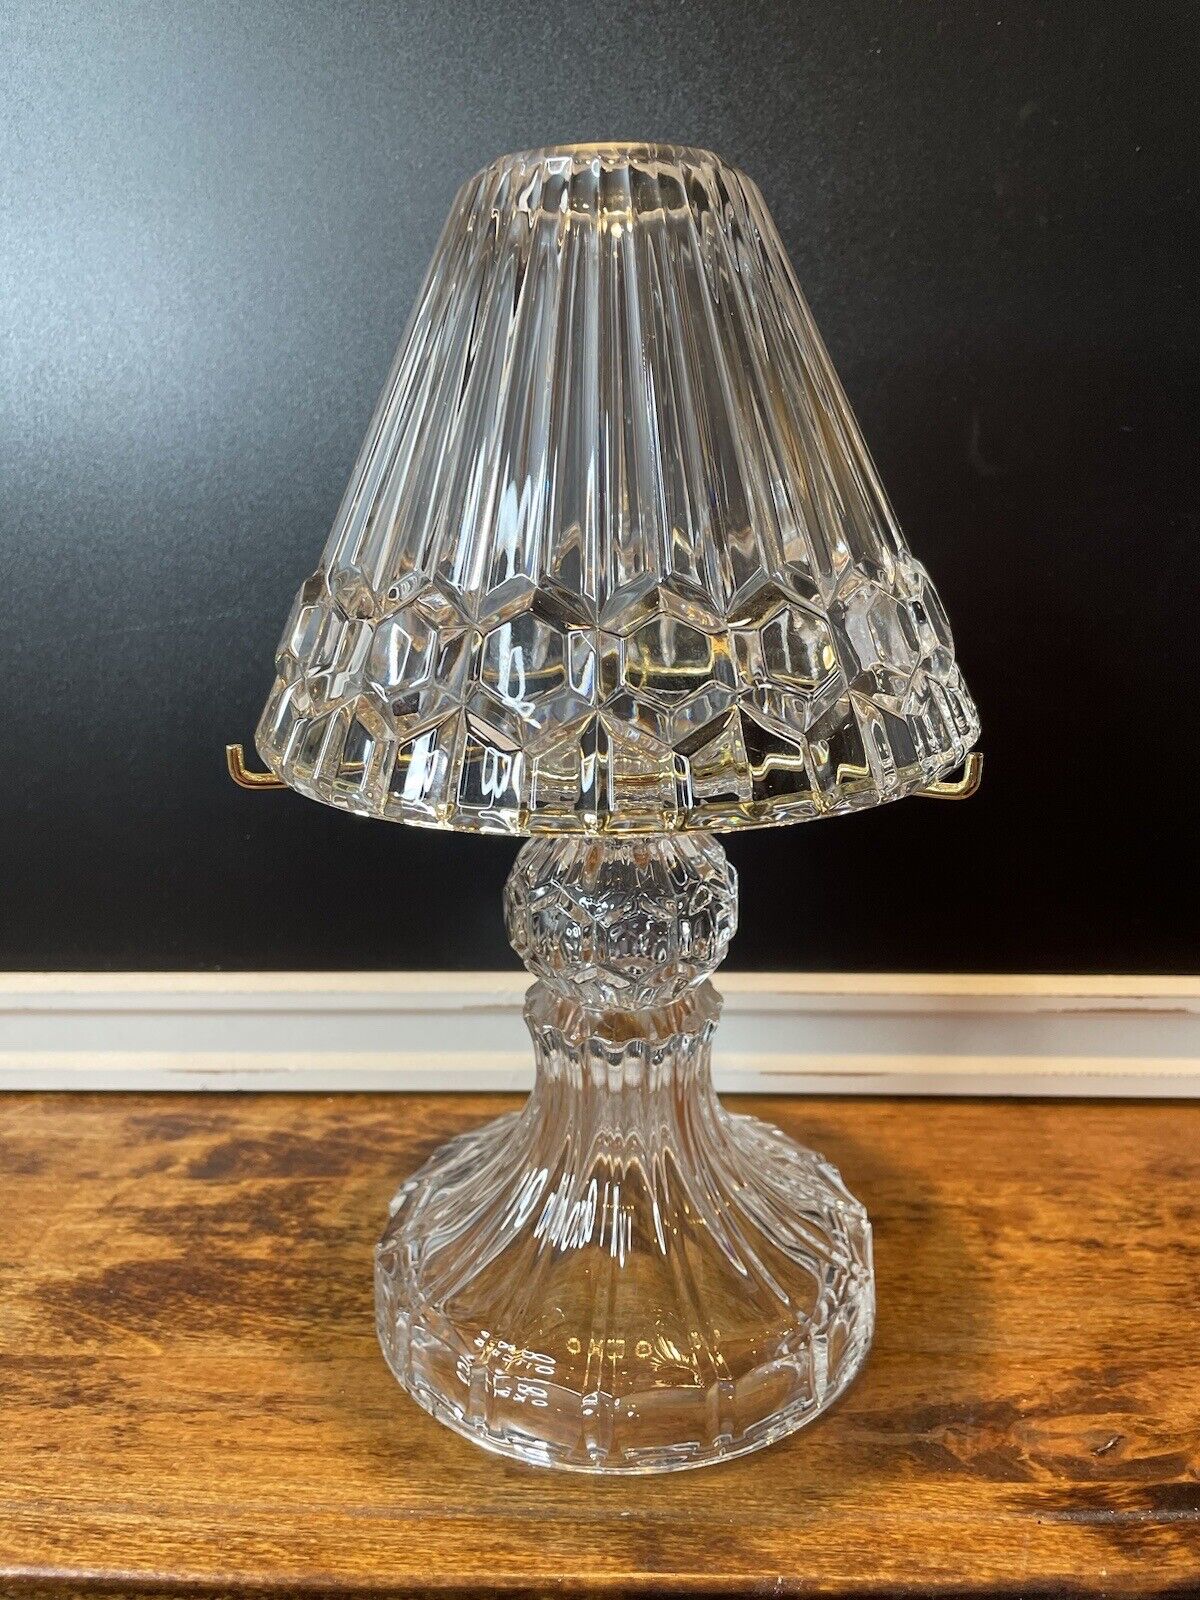 Partylite Astoria, Germany 24% Lead Crystal Tea Light Lamp. Never Used